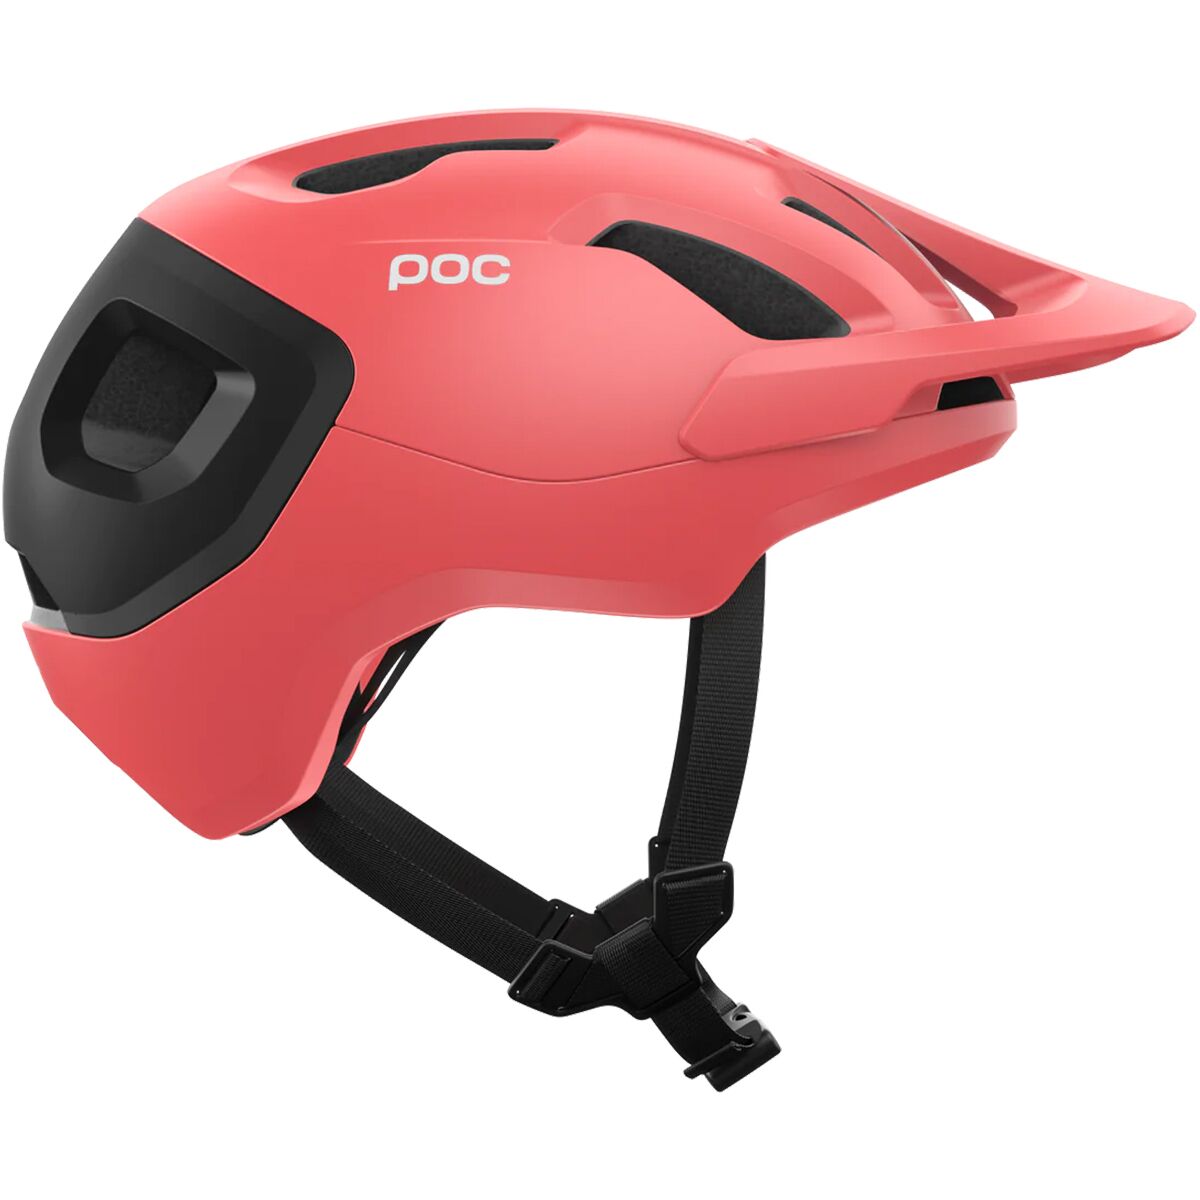 い出のひと時に、とびきりのおしゃれを！ POC Cycling Axion Cycling POC Helmet Helmet Actinium  MED Actinium Axion Pink Matt Pink MED